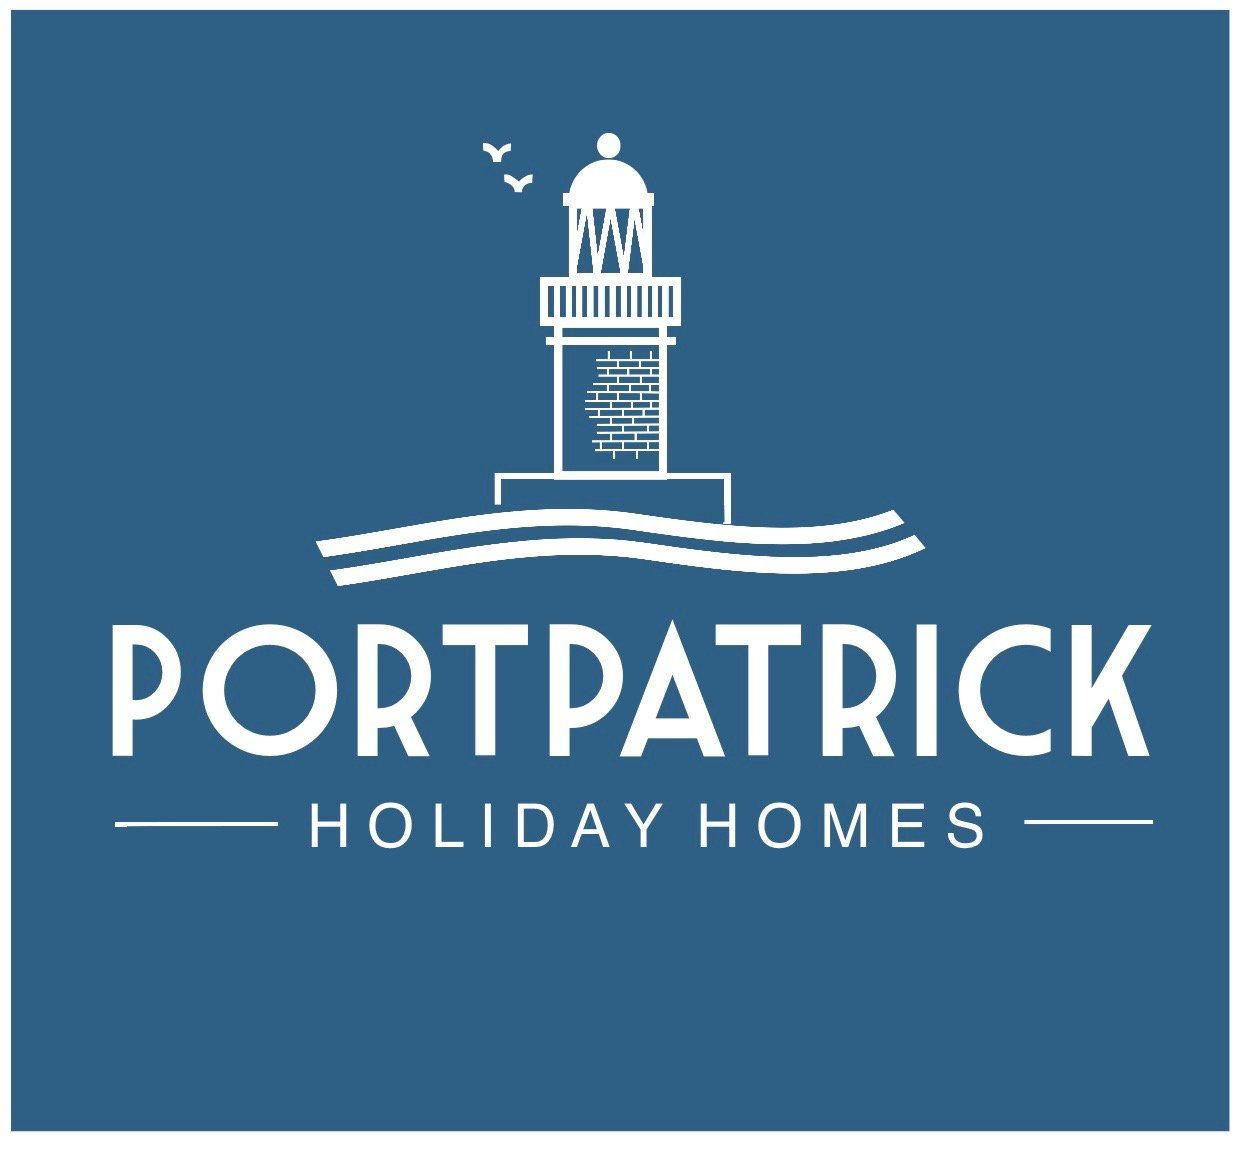 (c) Portpatrickholidayhomes.com